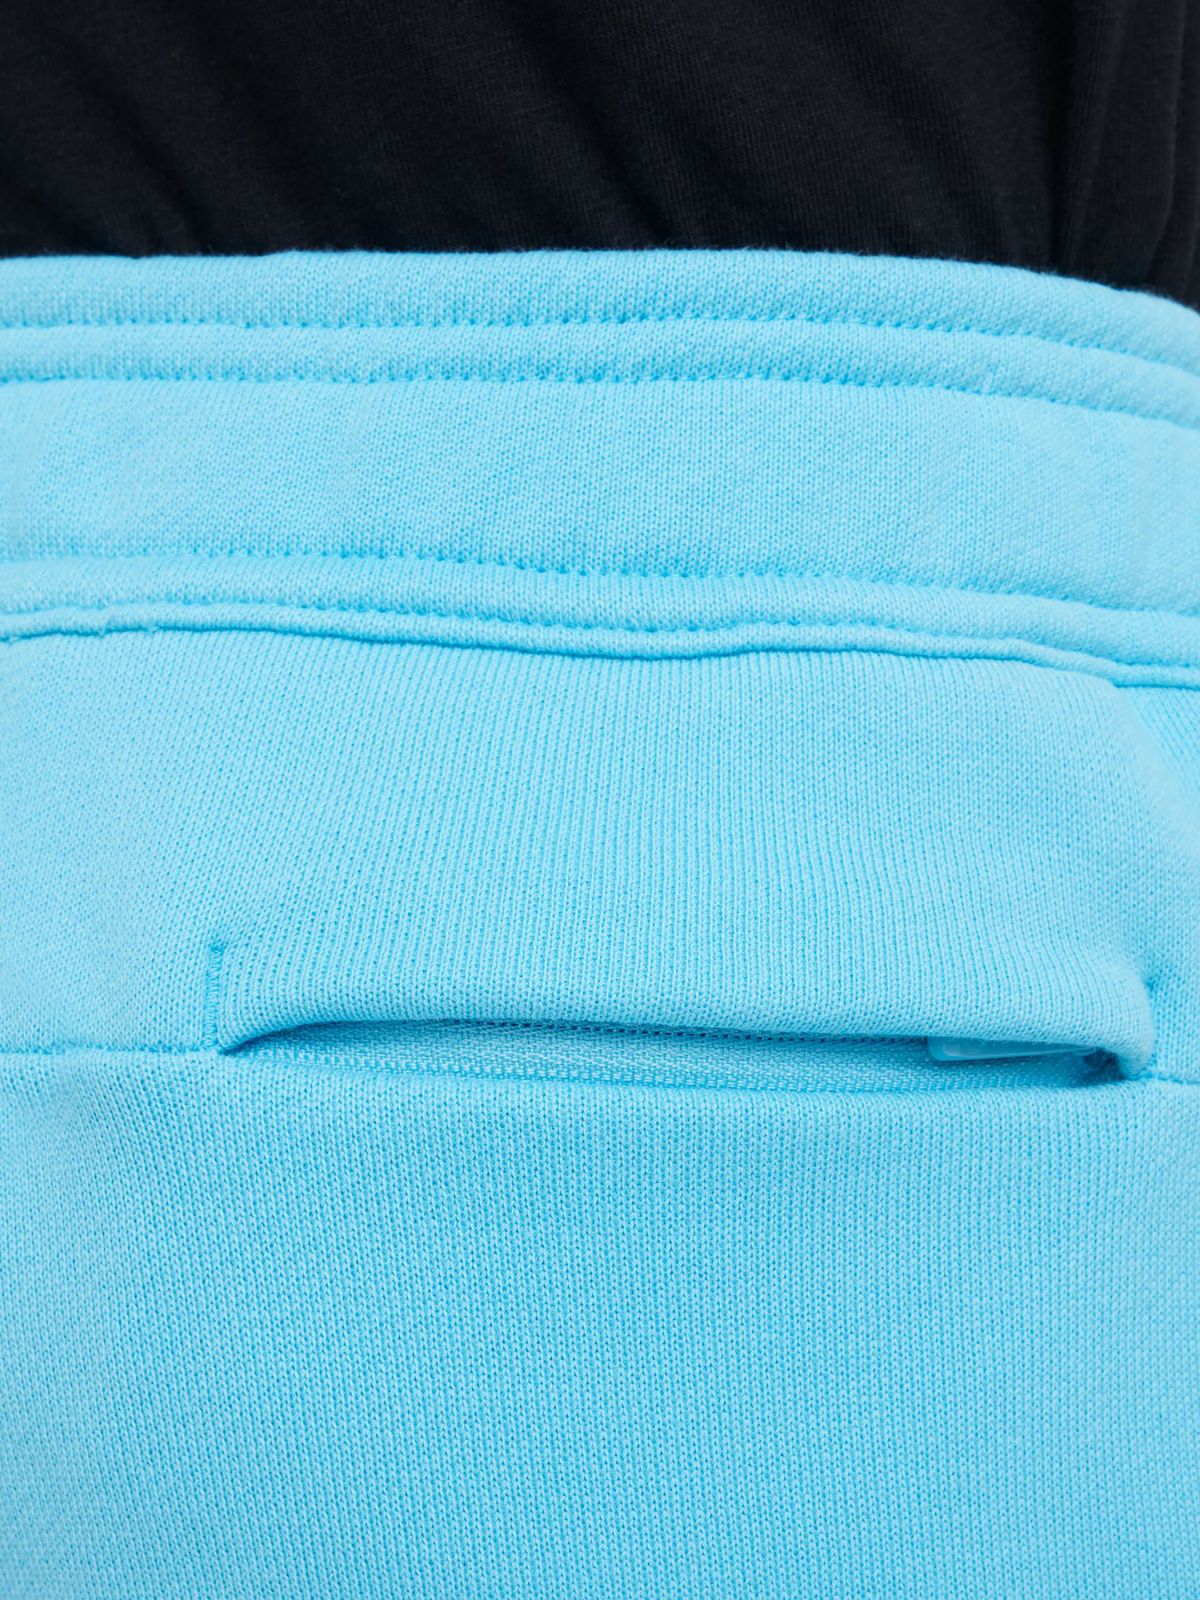  מכנסי טרנינג עם הדפס לוגו / יוניסקס של NIKE